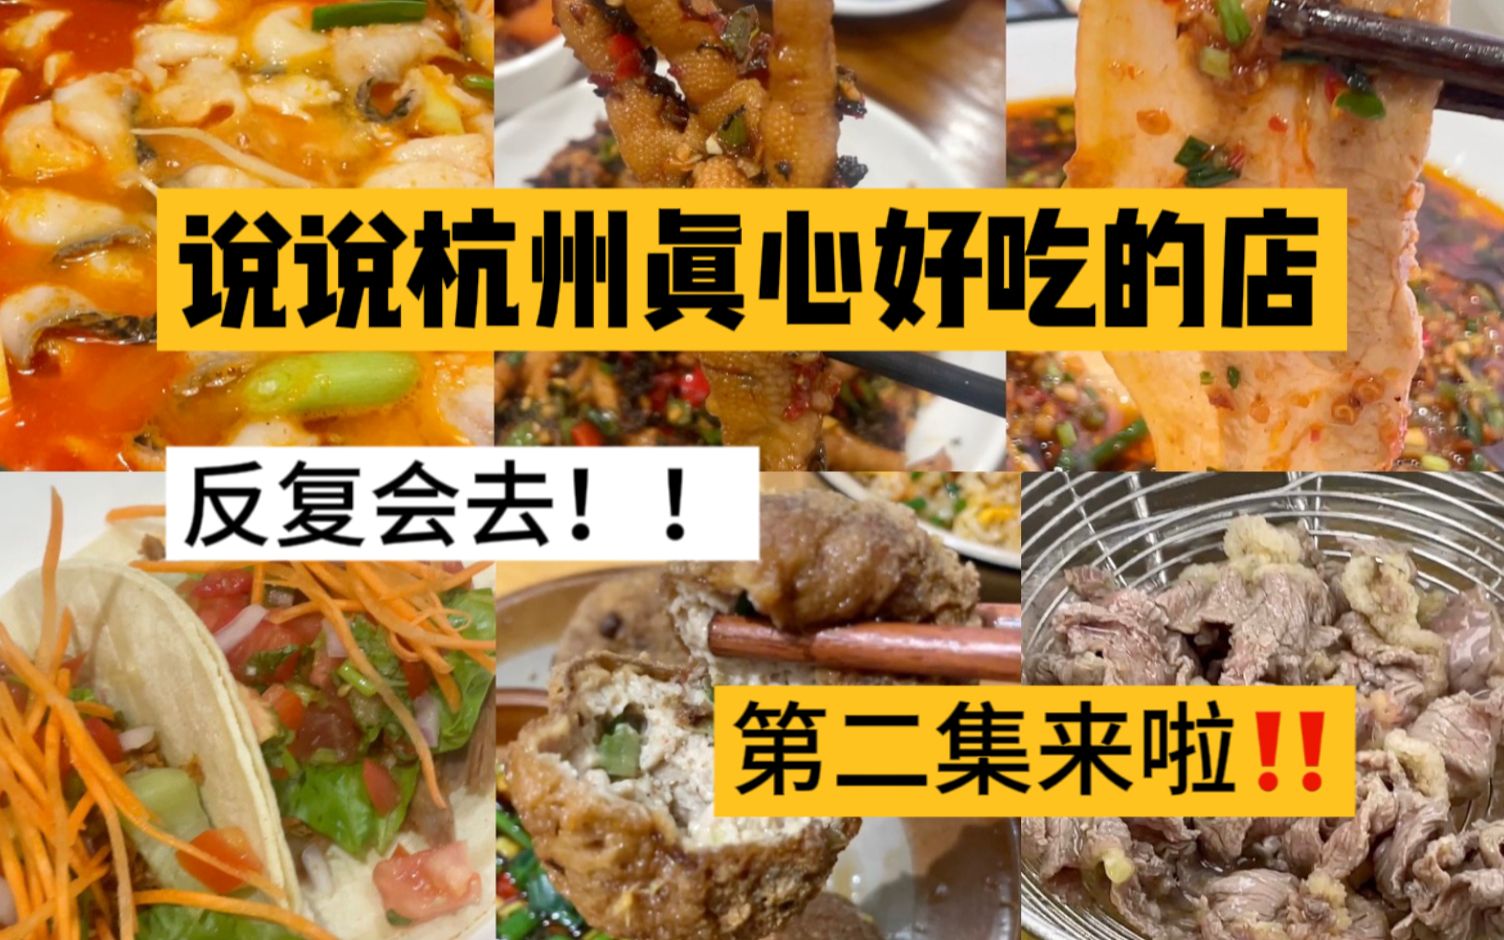 在杭州这几年反复会去的几家适合多人吃的小店2.0